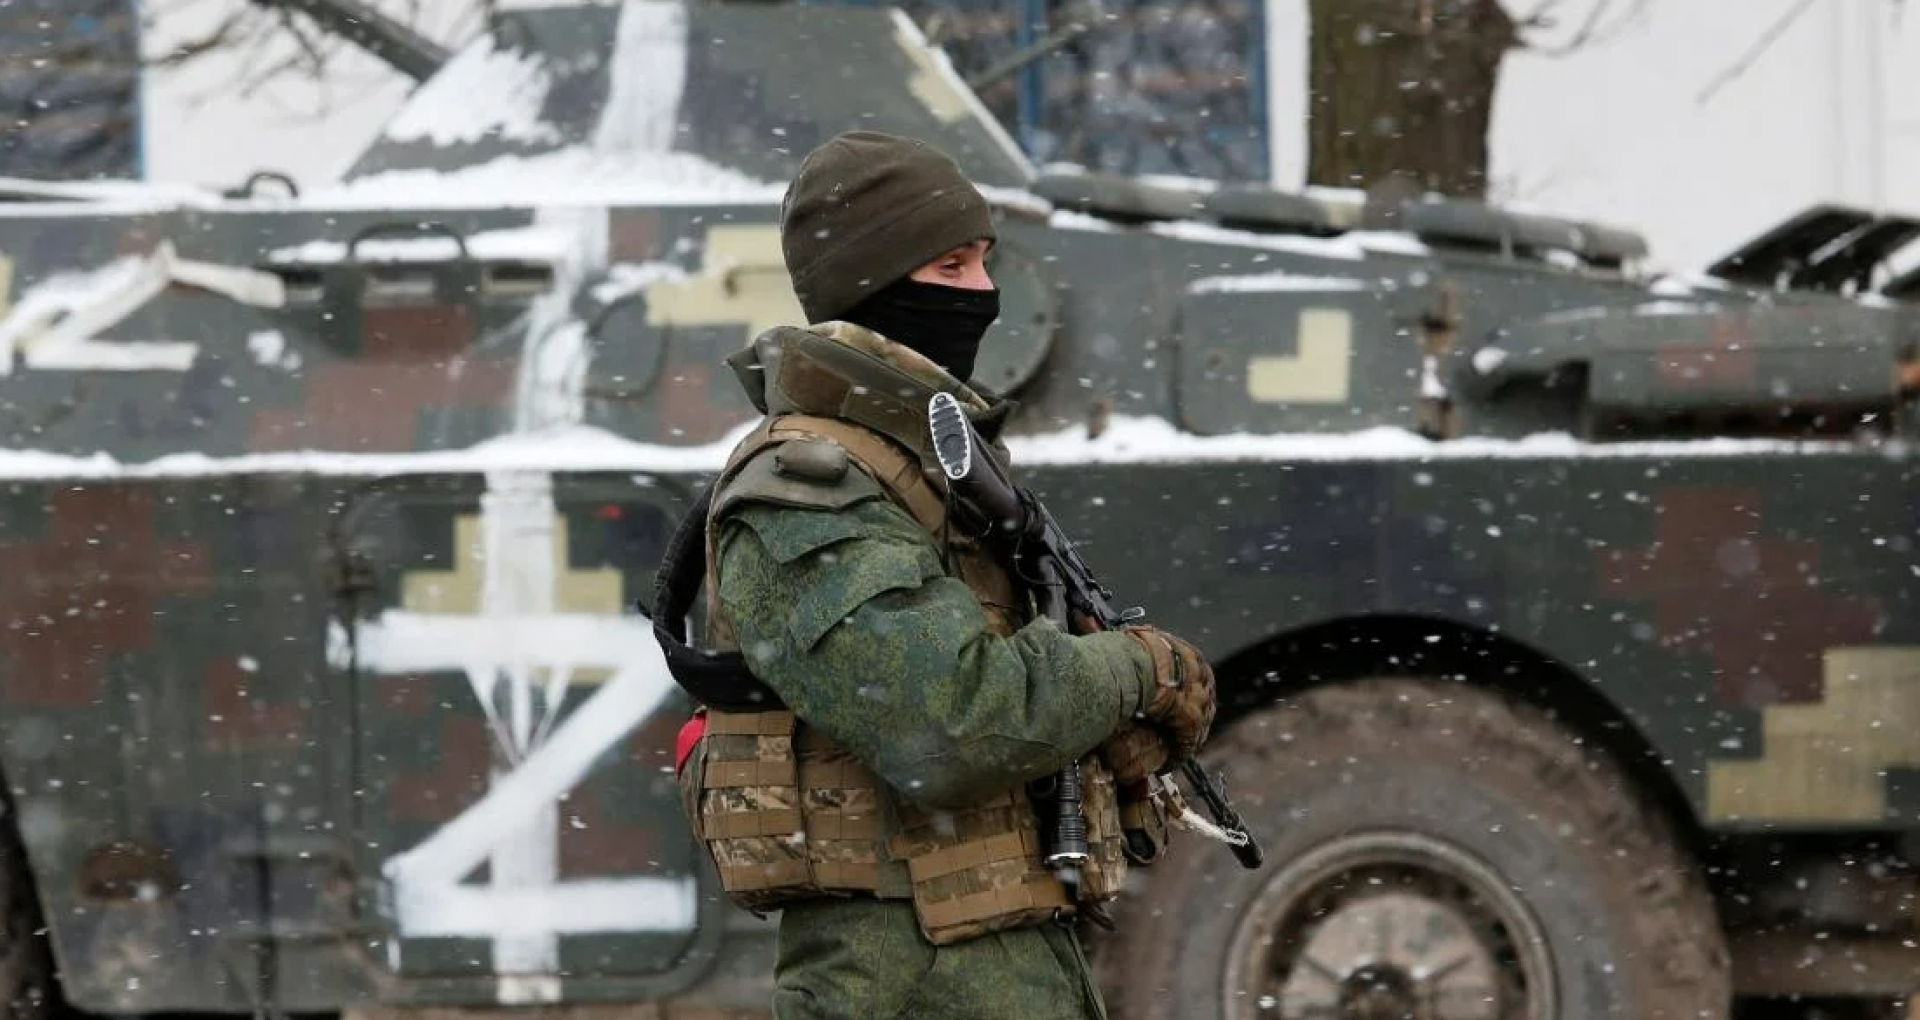 LIVE TEXT/ A 26-a zi de război în Ucraina. Pe 21 martie, peste opt mii de civili au fost evacuați din zonele afectate de război. „Komsomolskaya Pravda” susține că i-a fost spart site-ul oficial